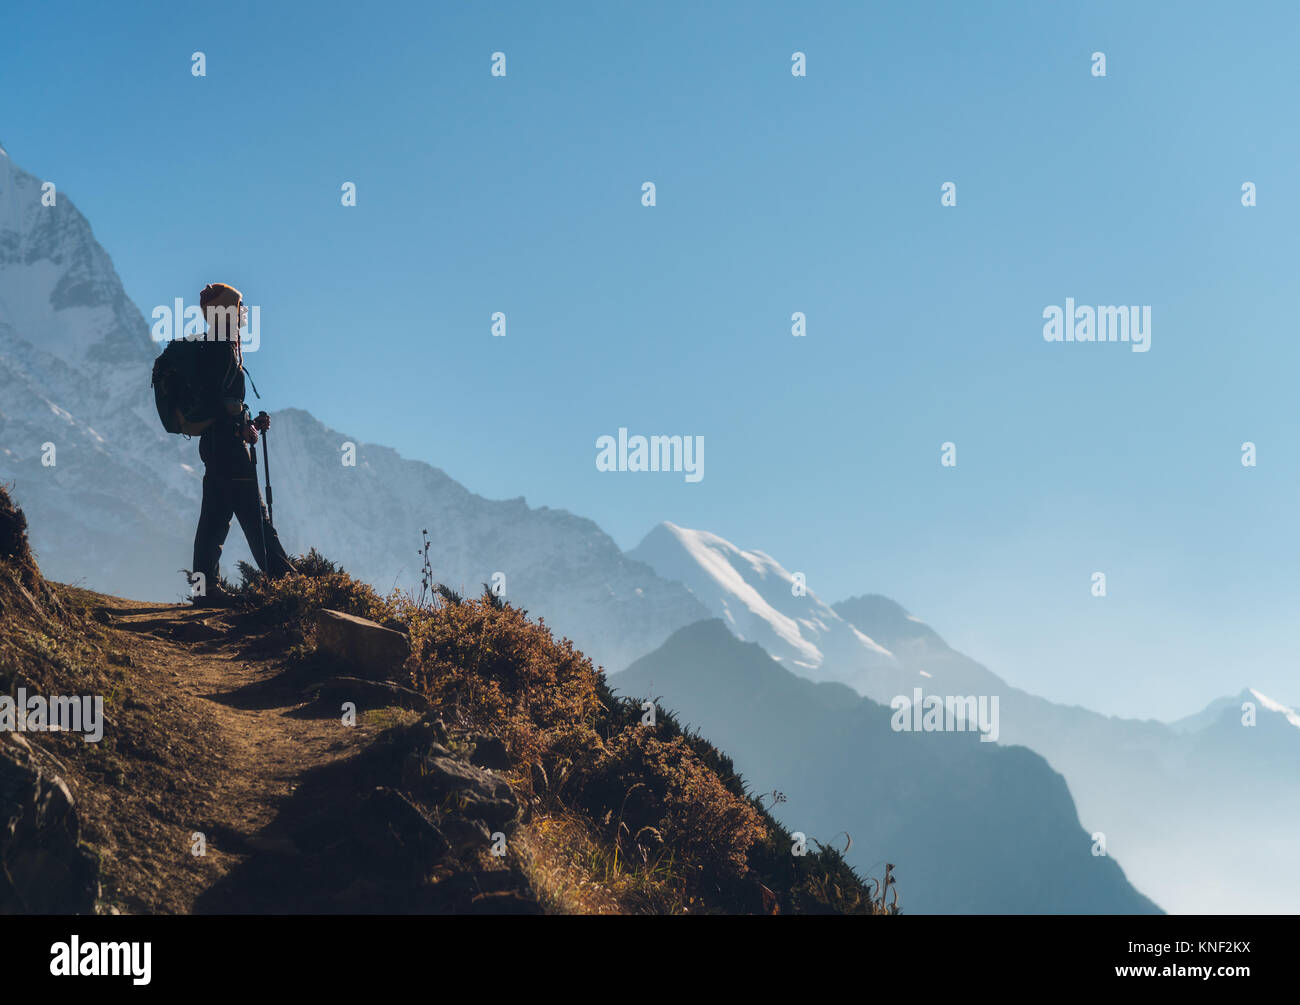 Stehende junge Frau mit Rucksack auf dem Hügel und Blick auf die Berge. Landschaft mit Mädchen, Pfad, Berge, blauer Himmel mit Wolken bei Sonnenaufgang in N Stockfoto